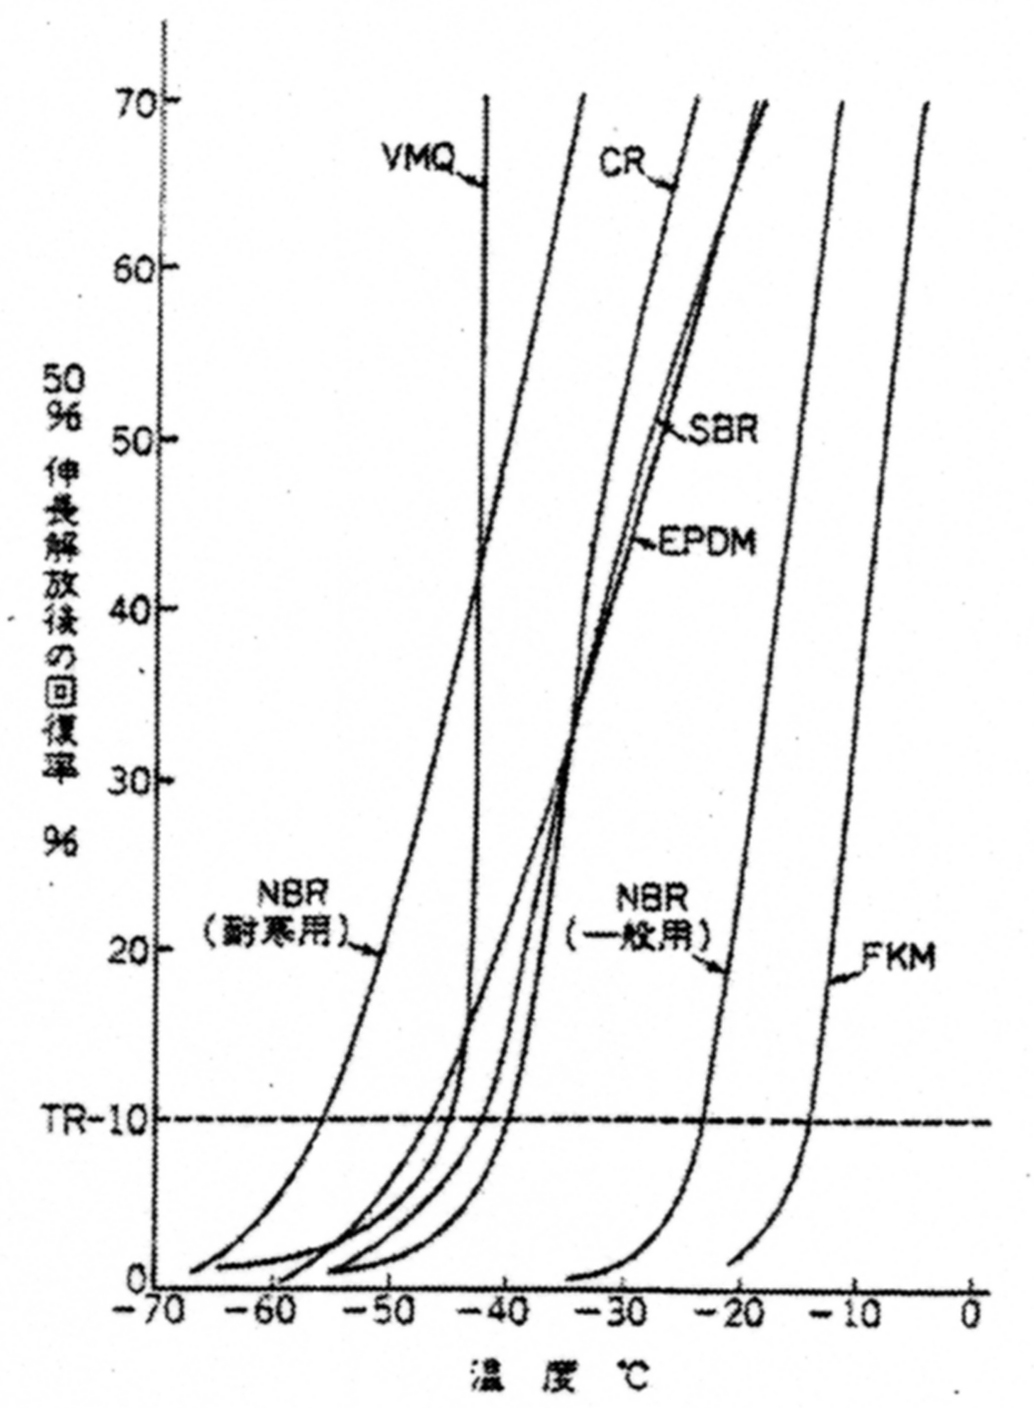 各種ゴム材料のTR曲線